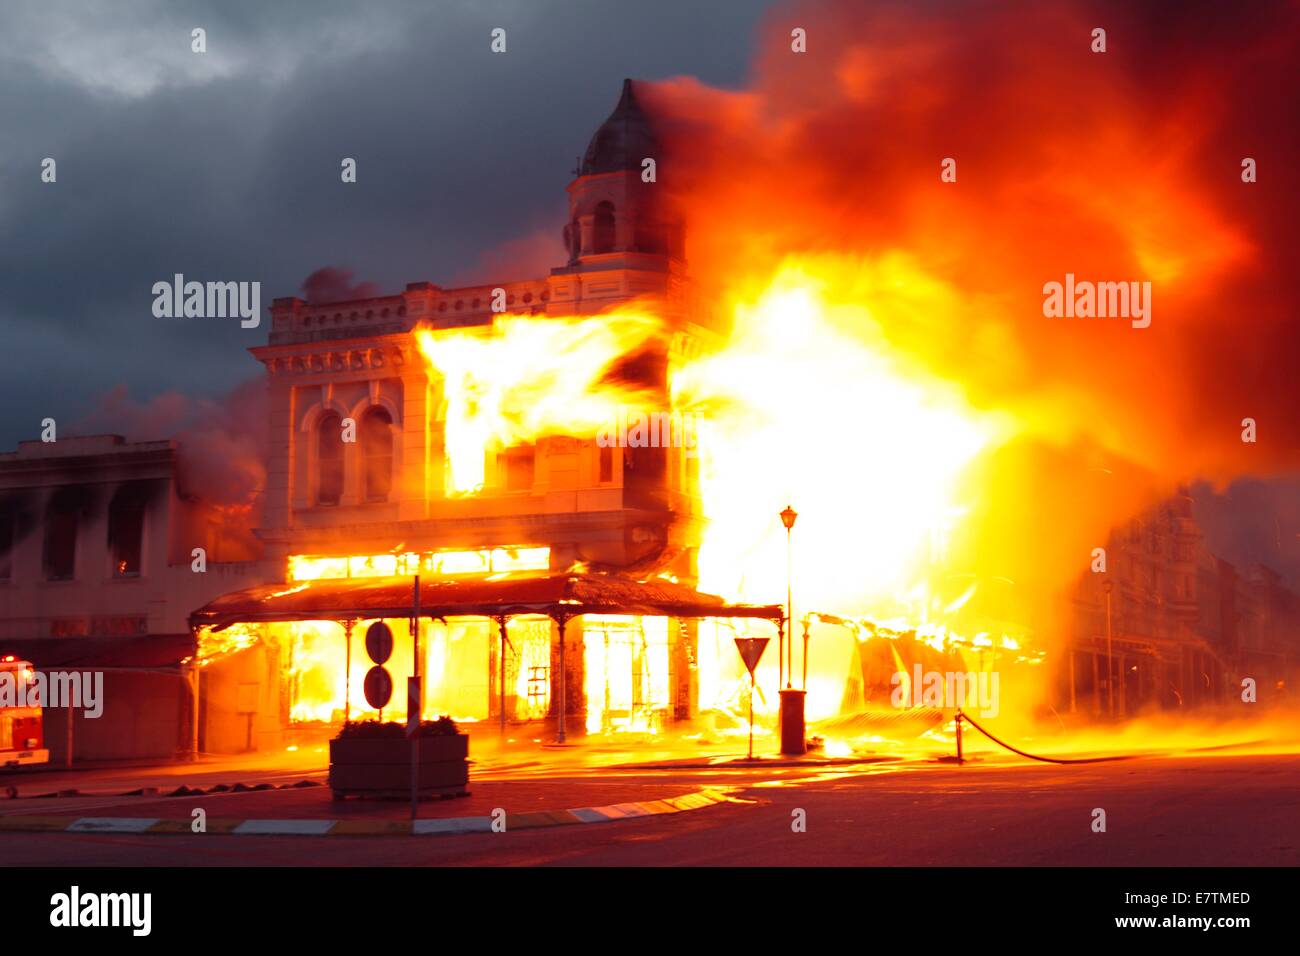 Historisches Gebäude in Flammen verschlungen. Fotografiert in Grahamstown, Eastern Cape, Südafrika. Stockfoto